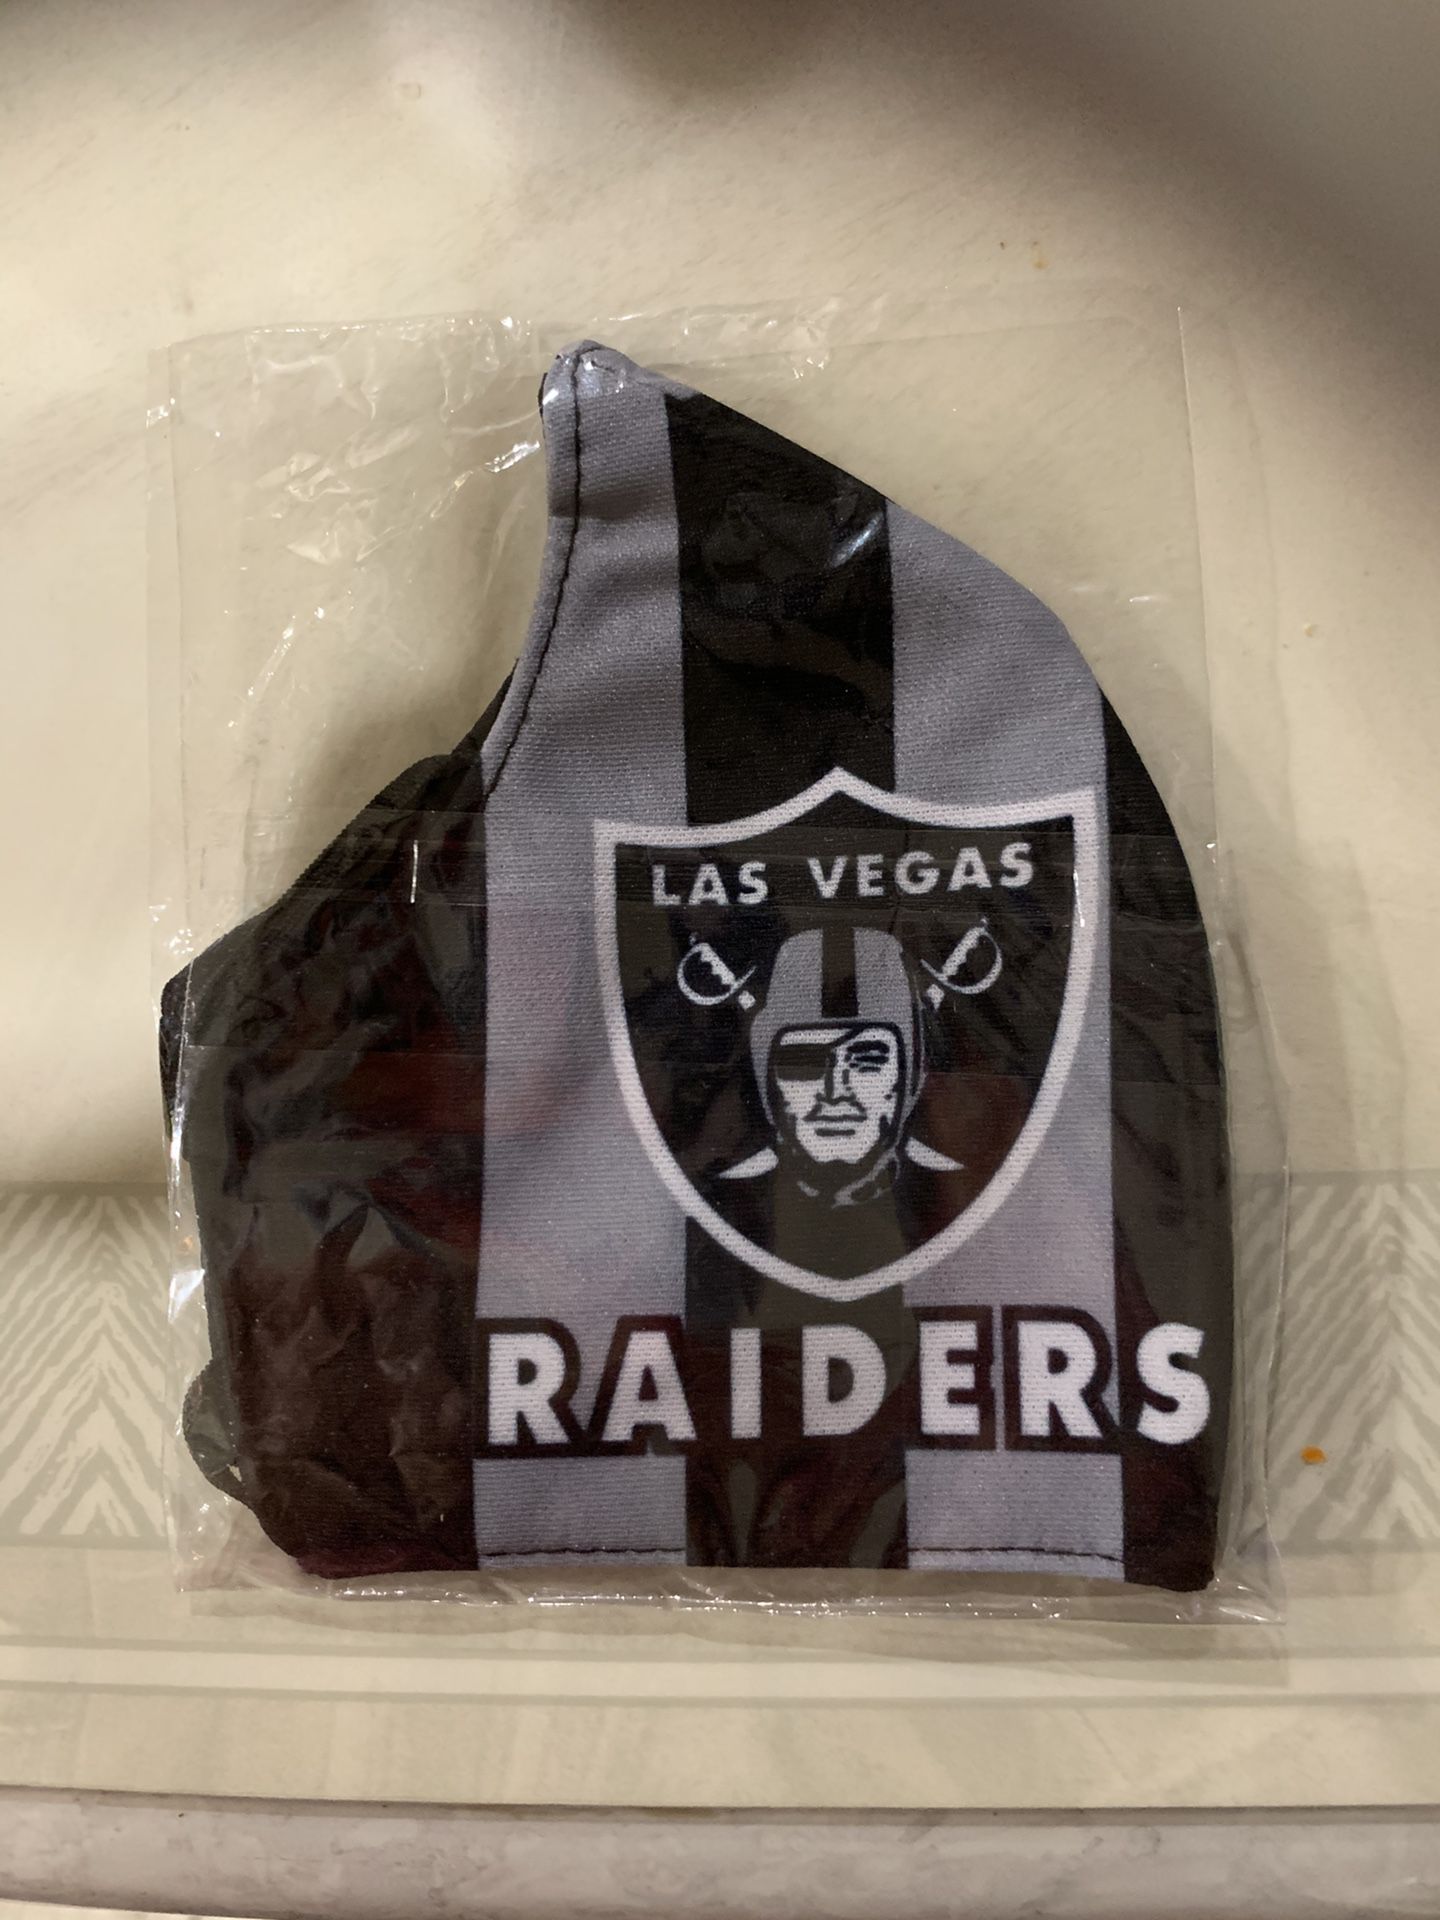 Las Vegas Raiders masks